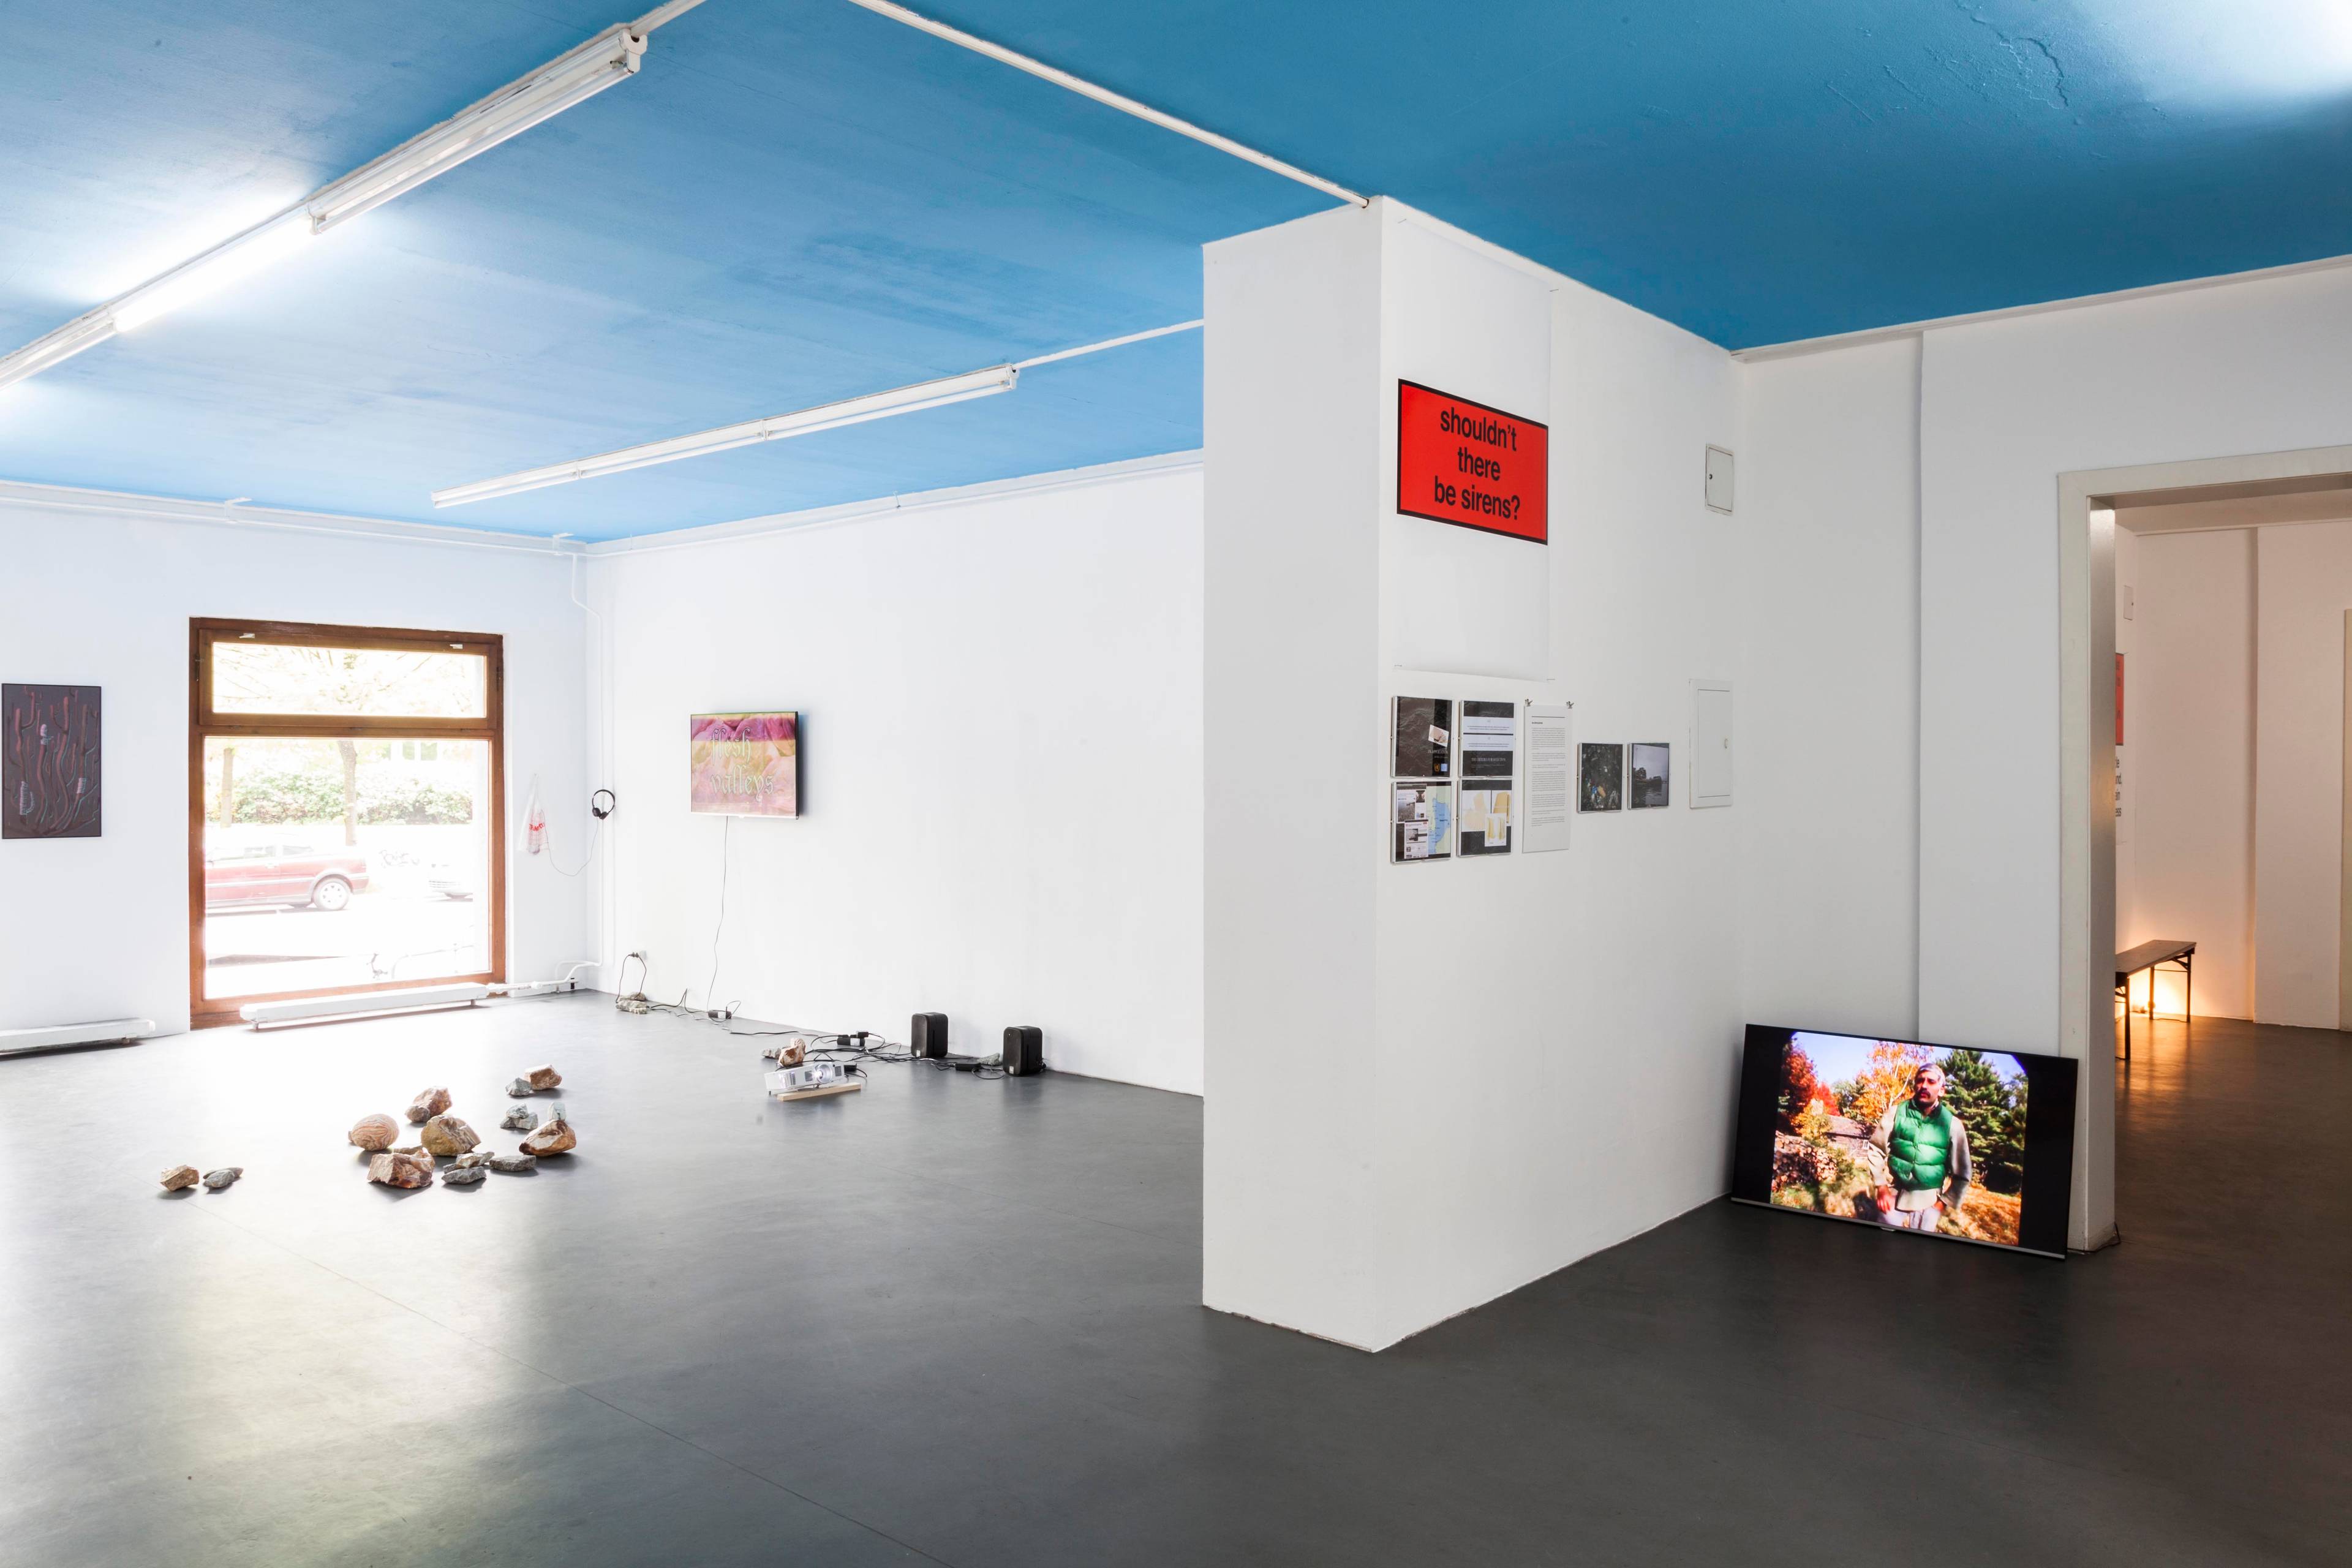 Exhibition view of ”Unklarheit ist die neue Gewissheit …“ at Spike Berlin in 2018